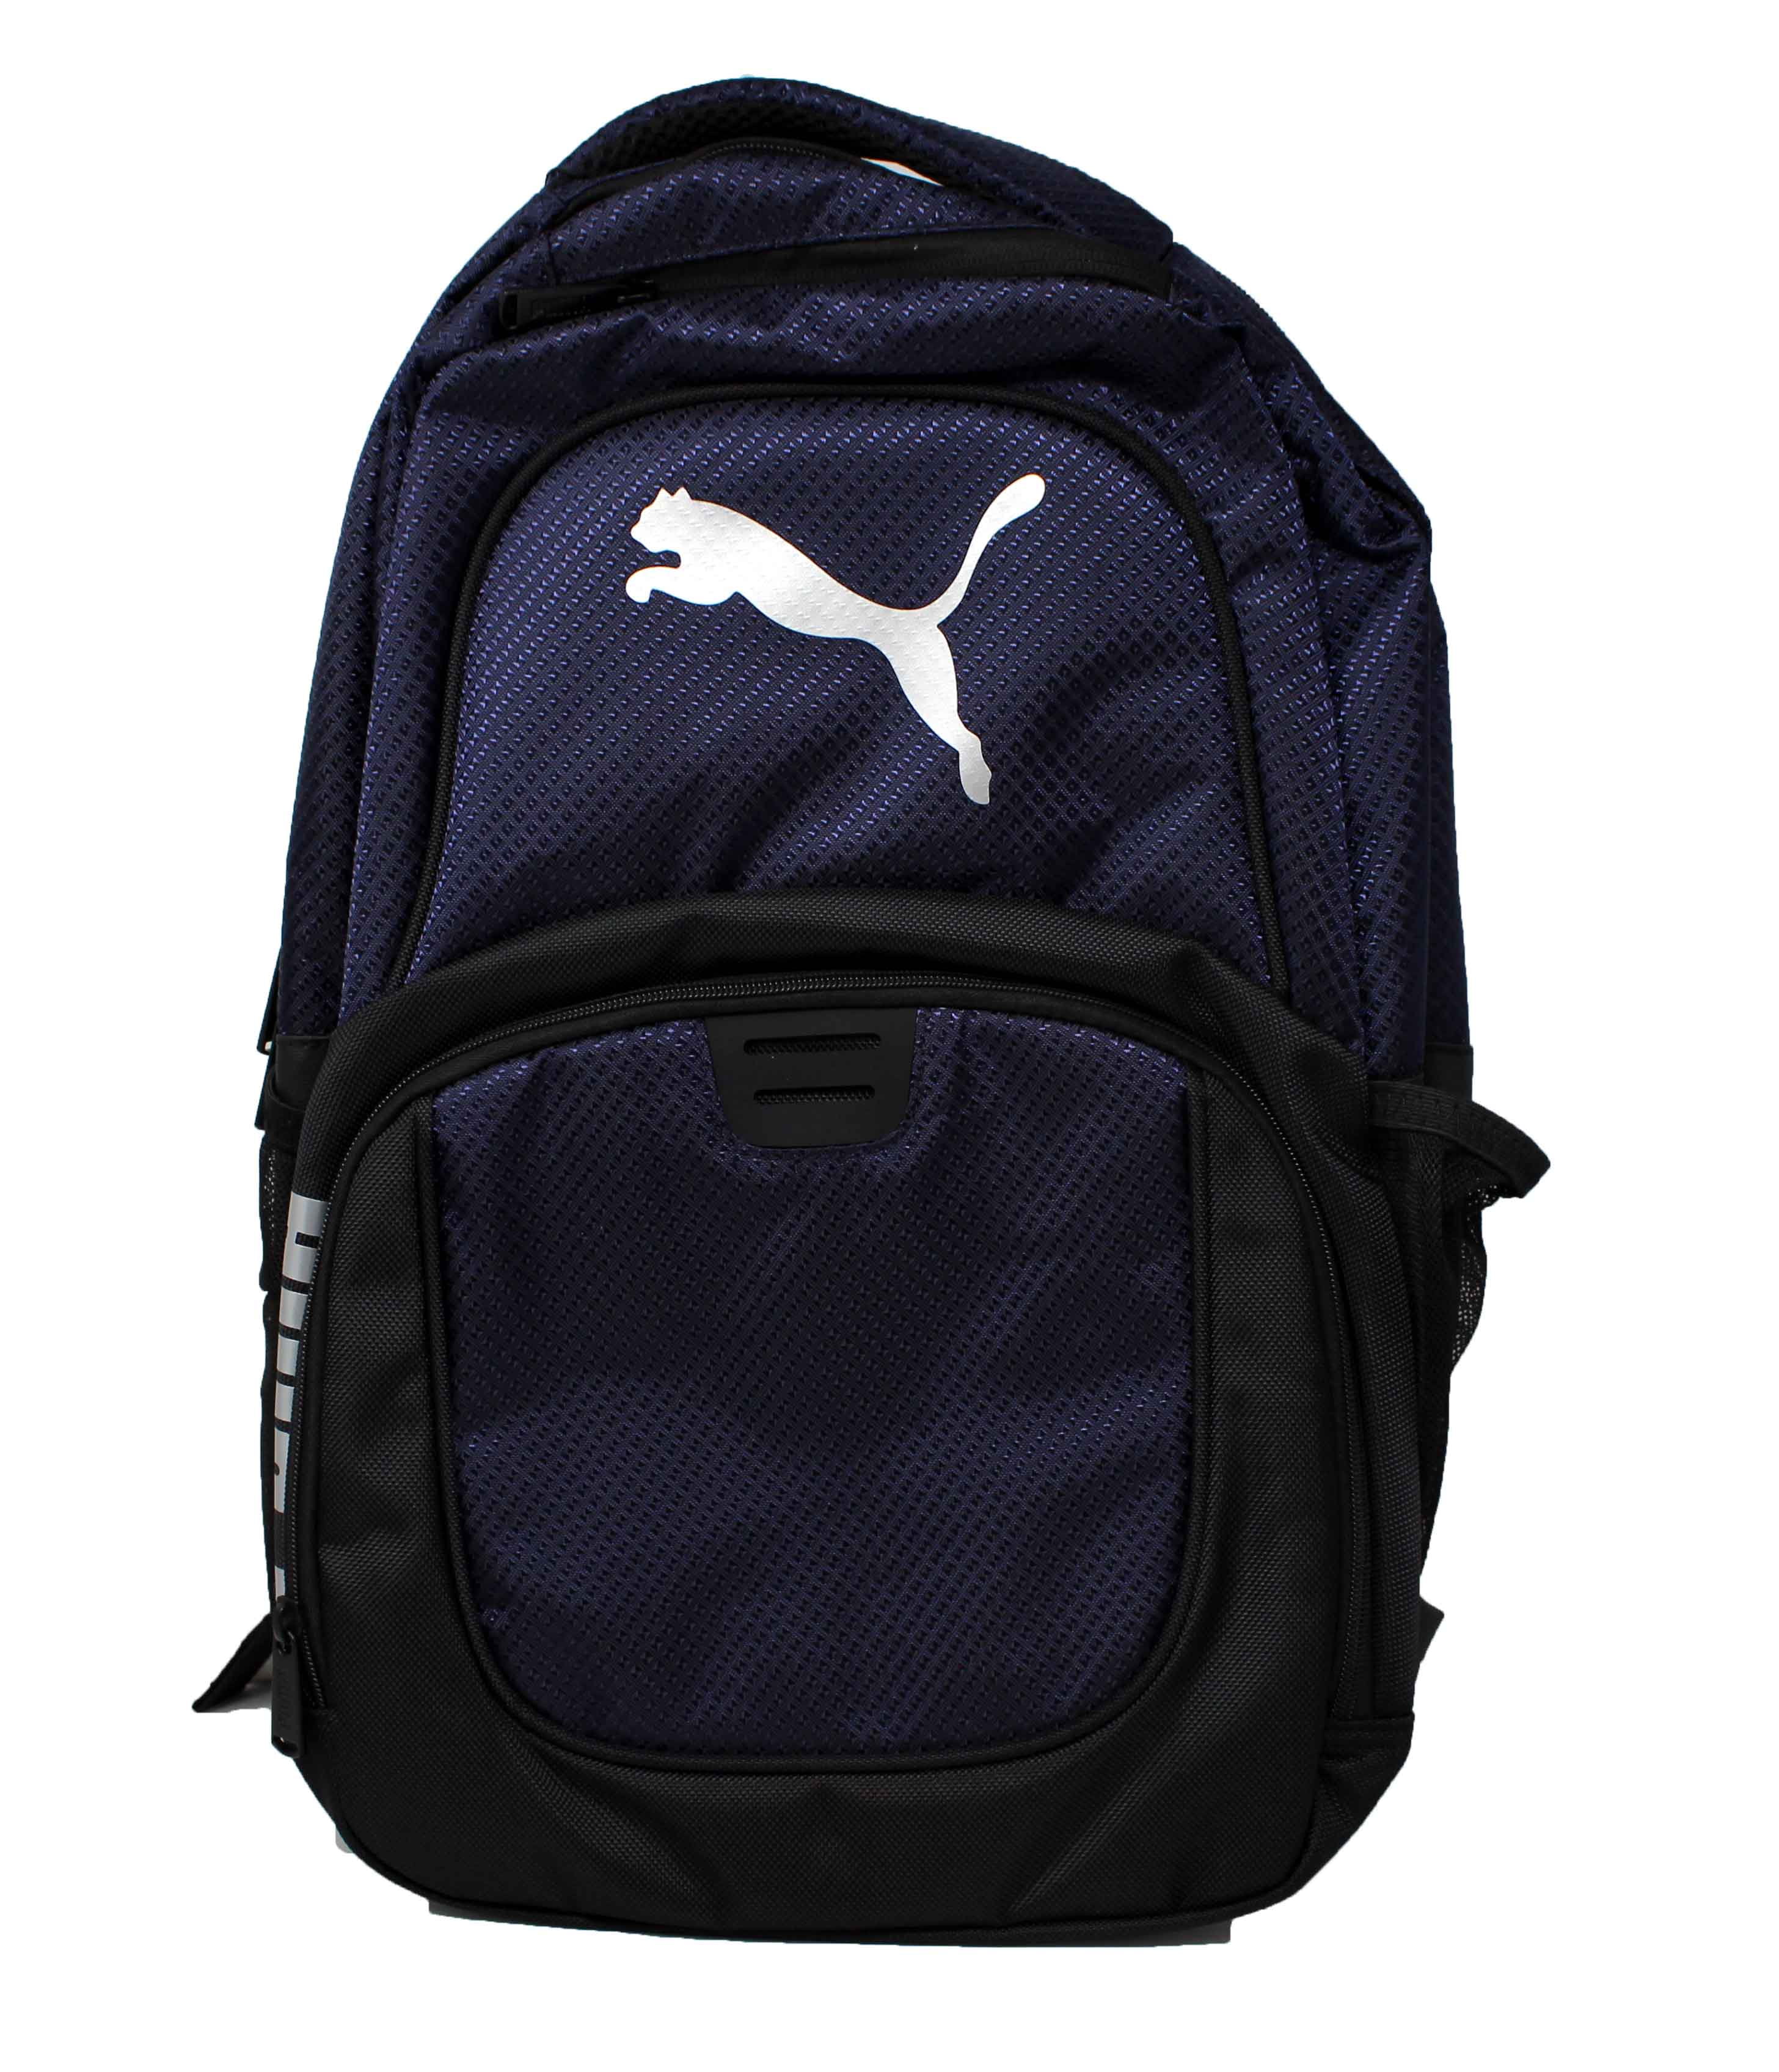 Puma Phase backpack in green | ASOS | Black school bags, Backpacks, Bags